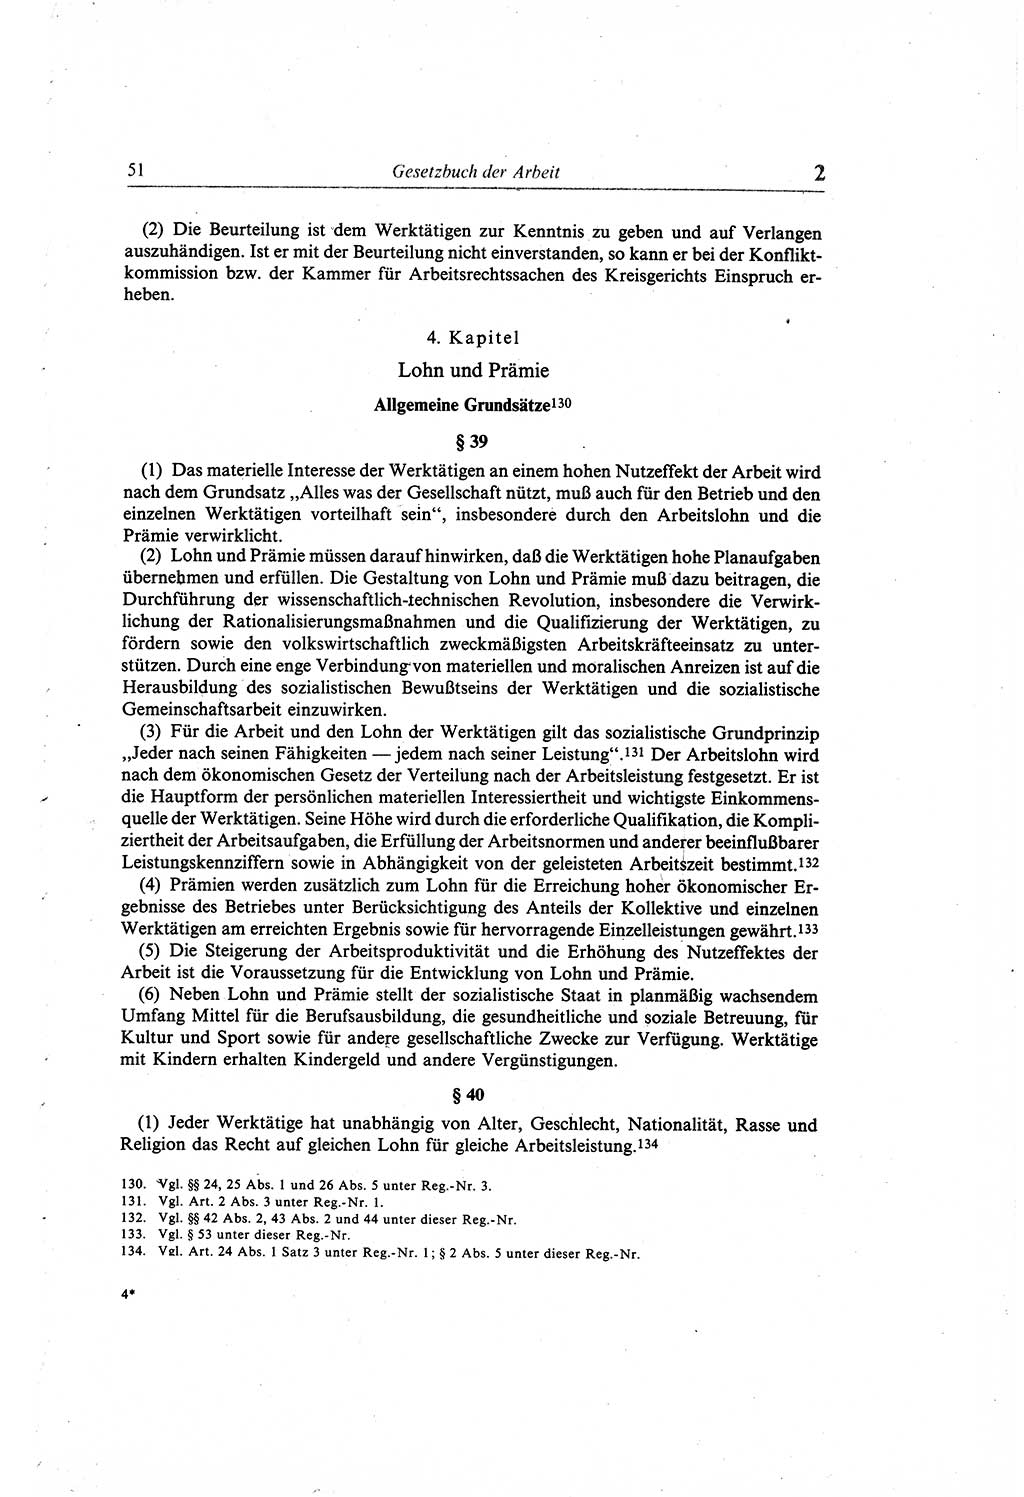 Gesetzbuch der Arbeit (GBA) und andere ausgewählte rechtliche Bestimmungen [Deutsche Demokratische Republik (DDR)] 1968, Seite 51 (GBA DDR 1968, S. 51)